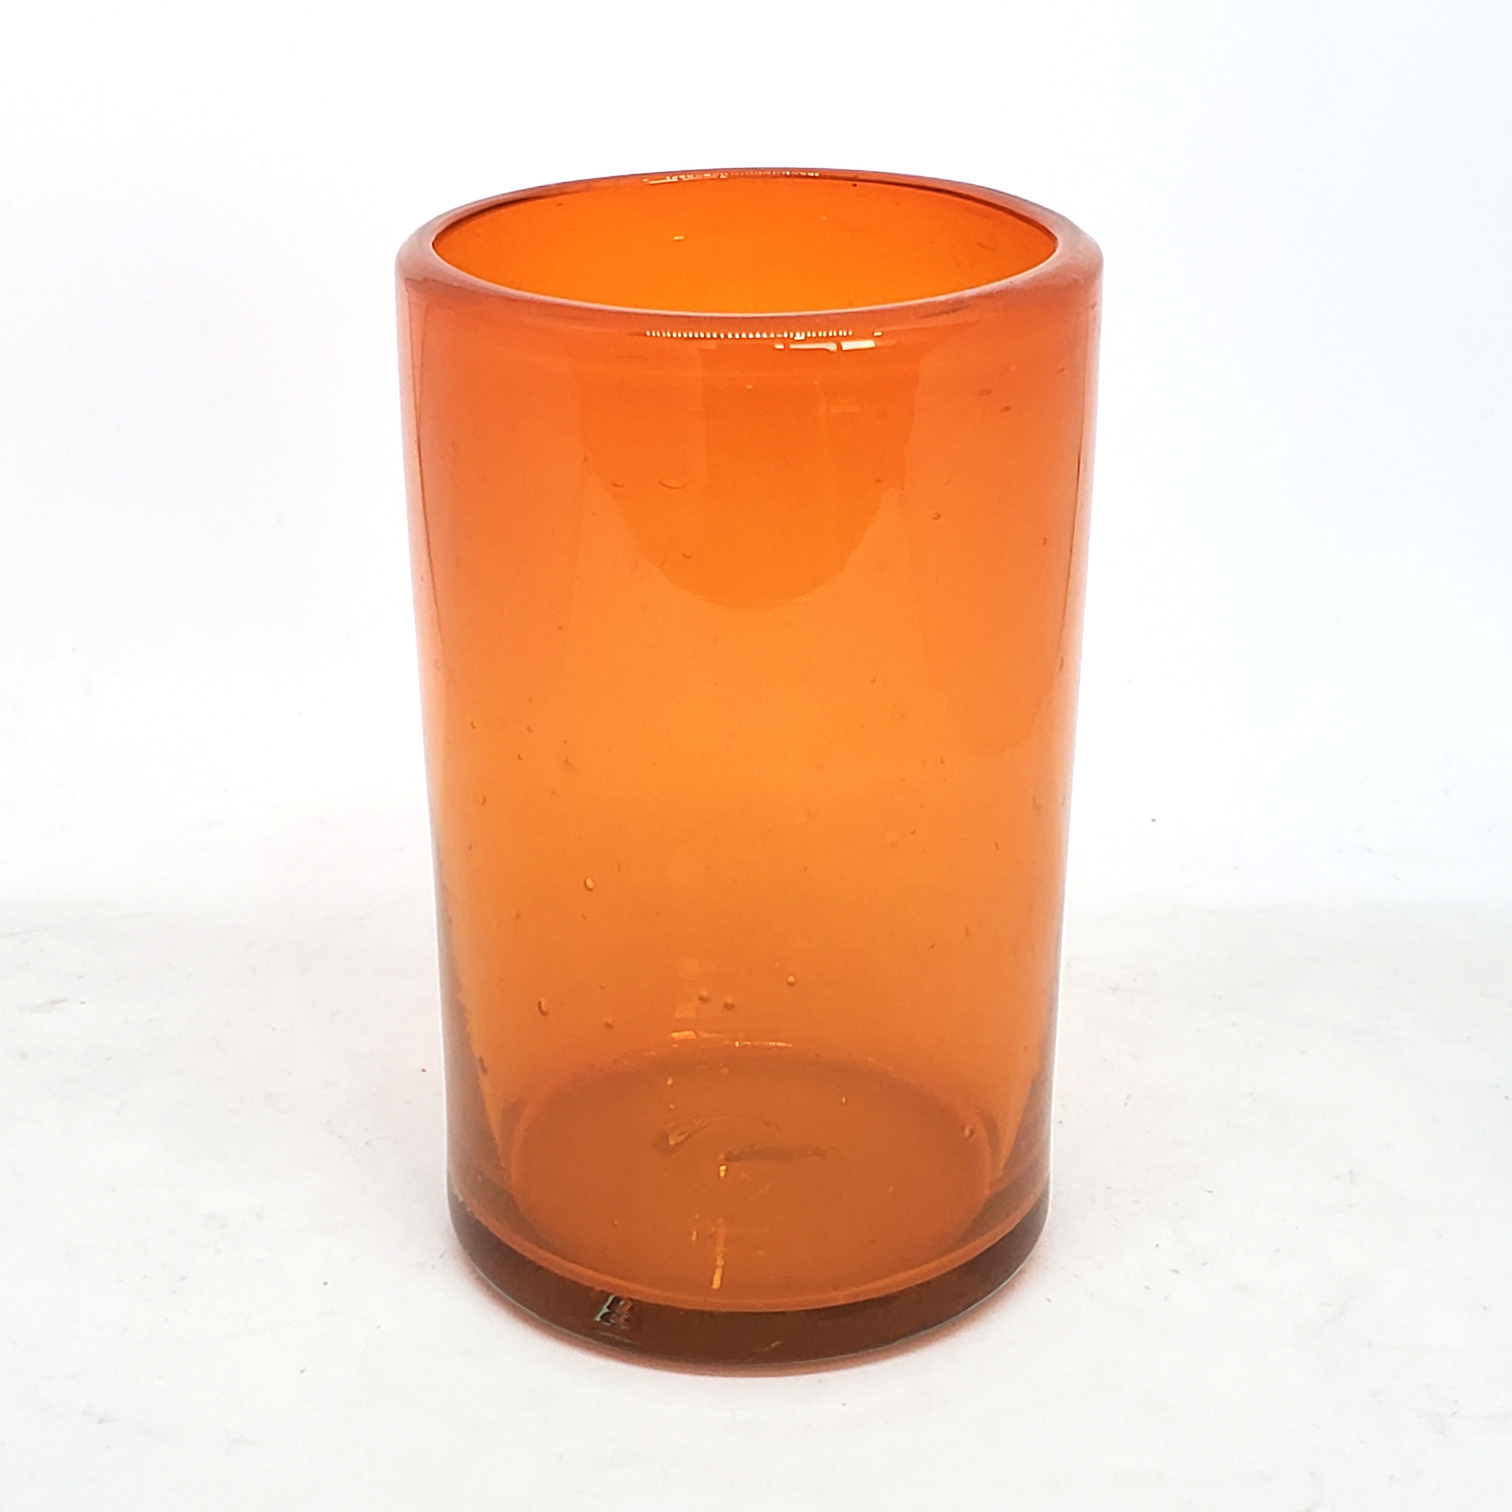  / Solid Orange 14 oz Drinking Glasses (set of 6)